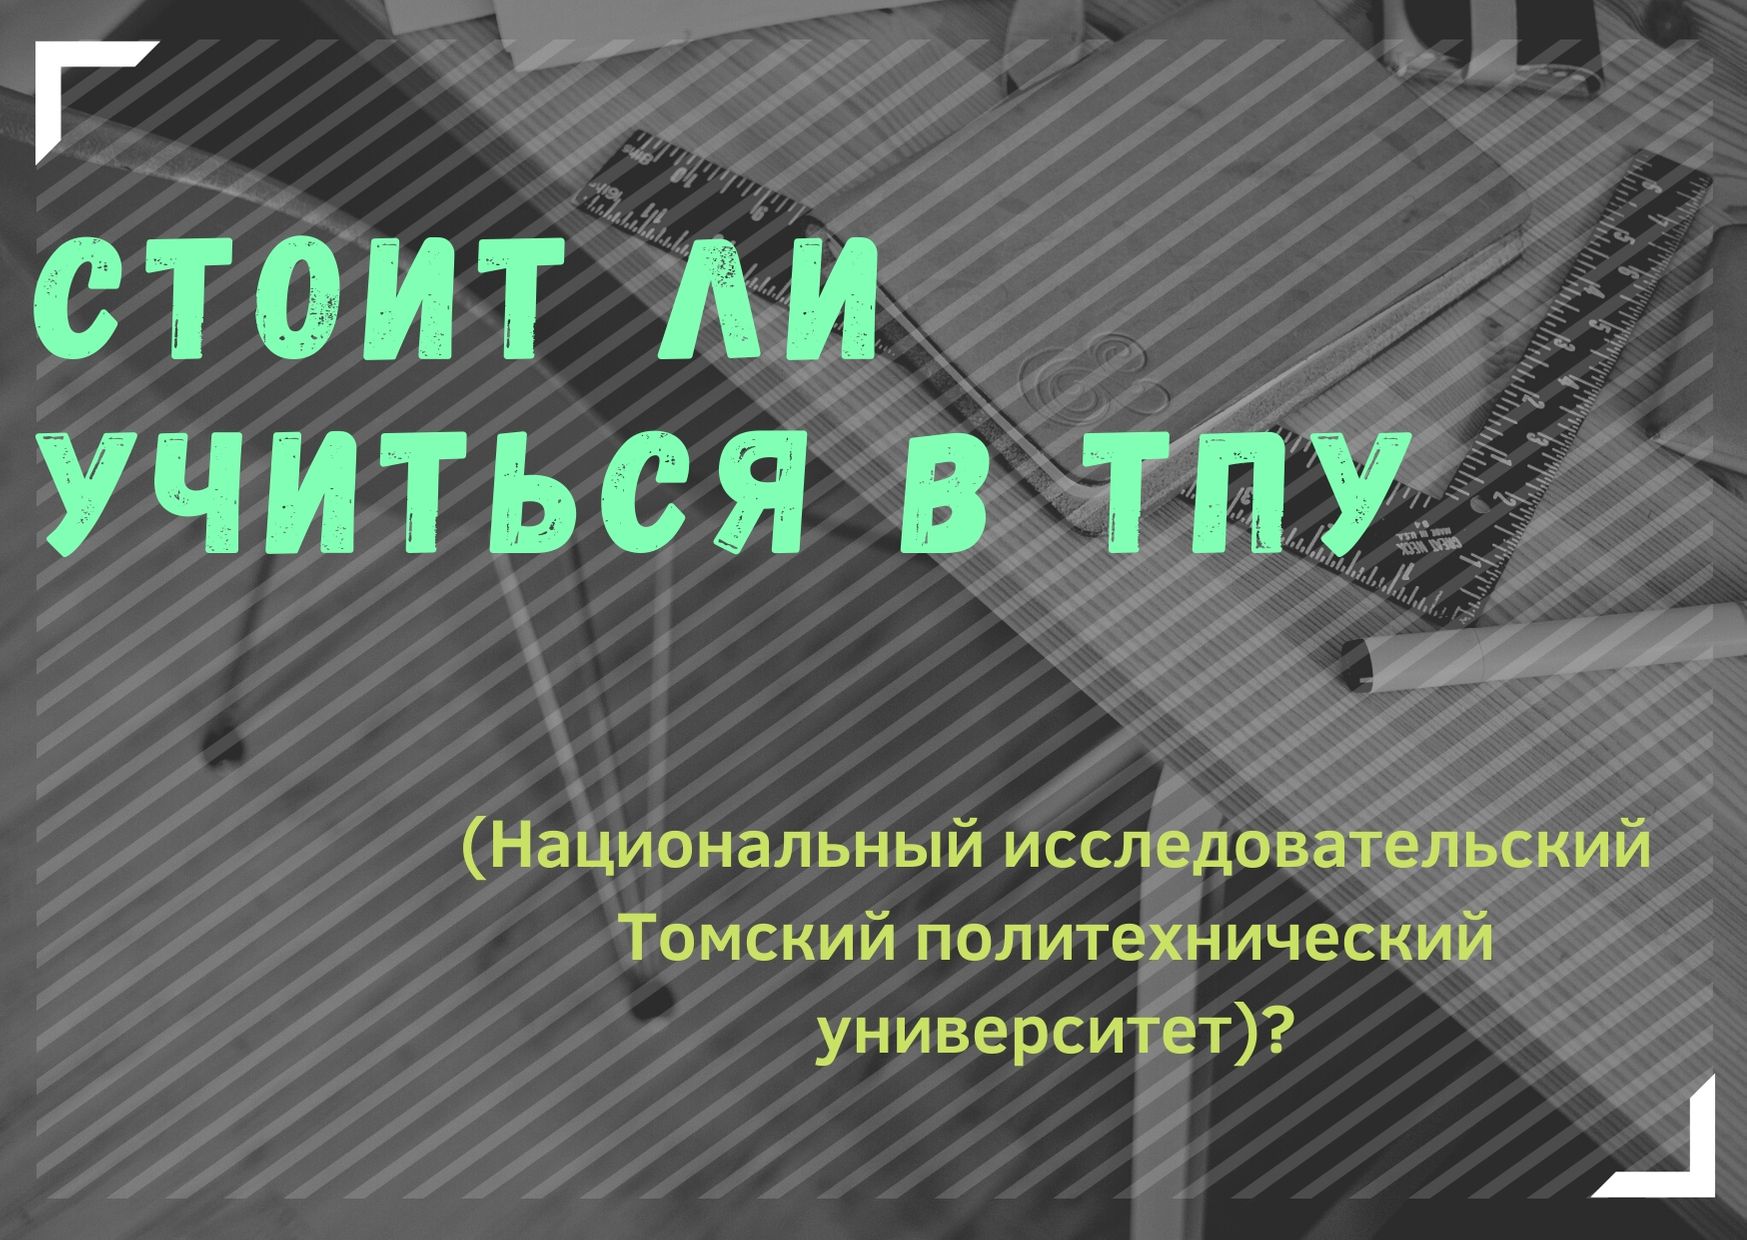 Стоит ли учиться в ТПУ (Национальный исследовательский Томский политехнический университет)?